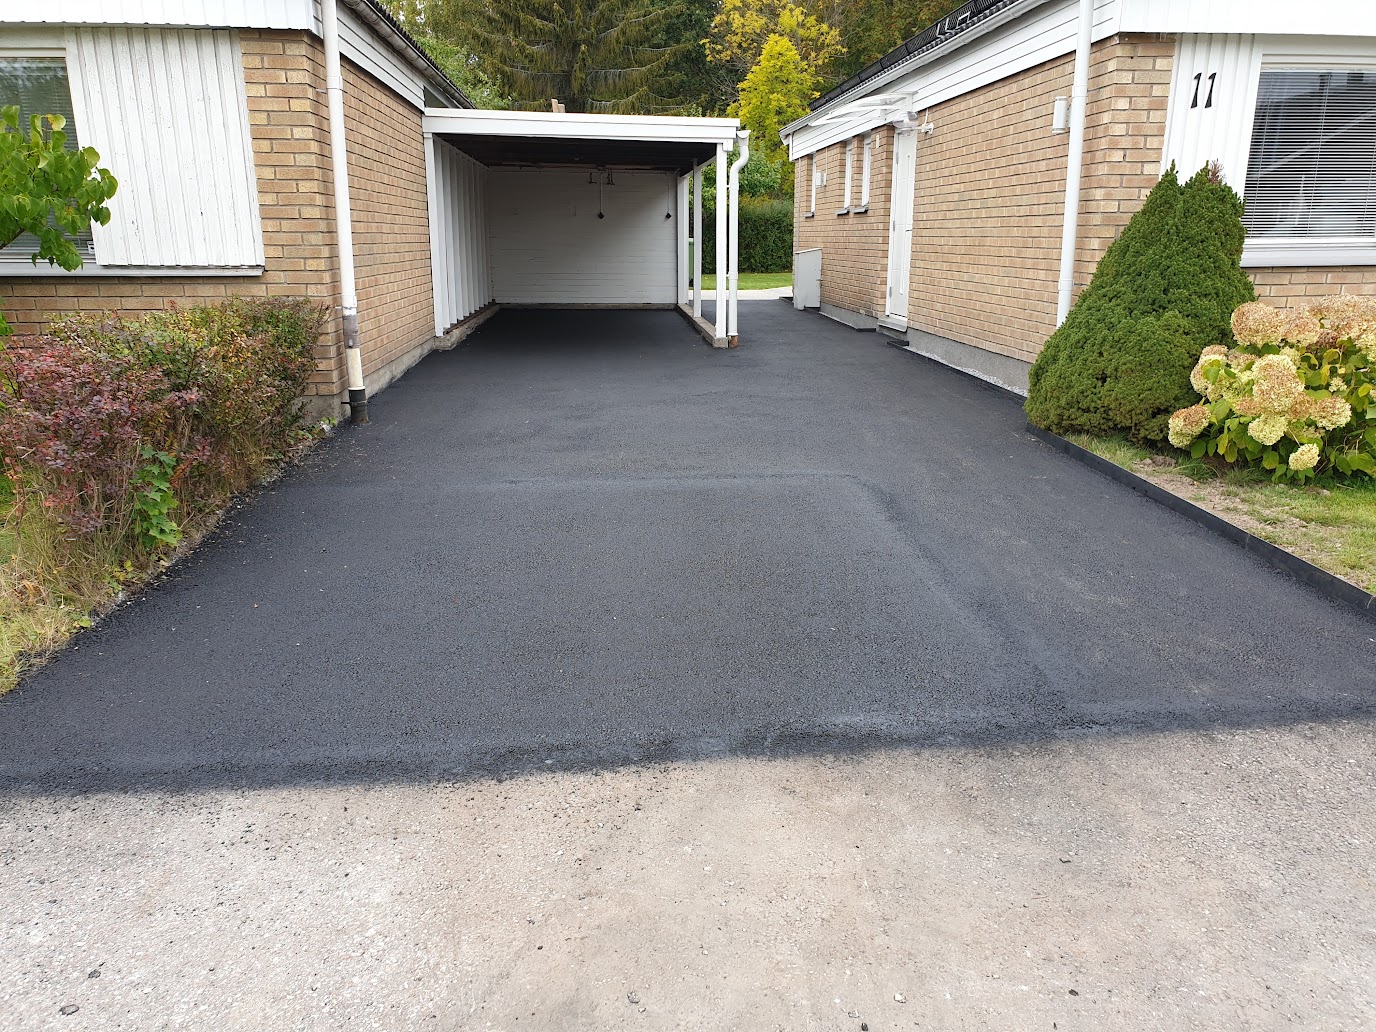 Nyanlagd garageuppfart med asfalt